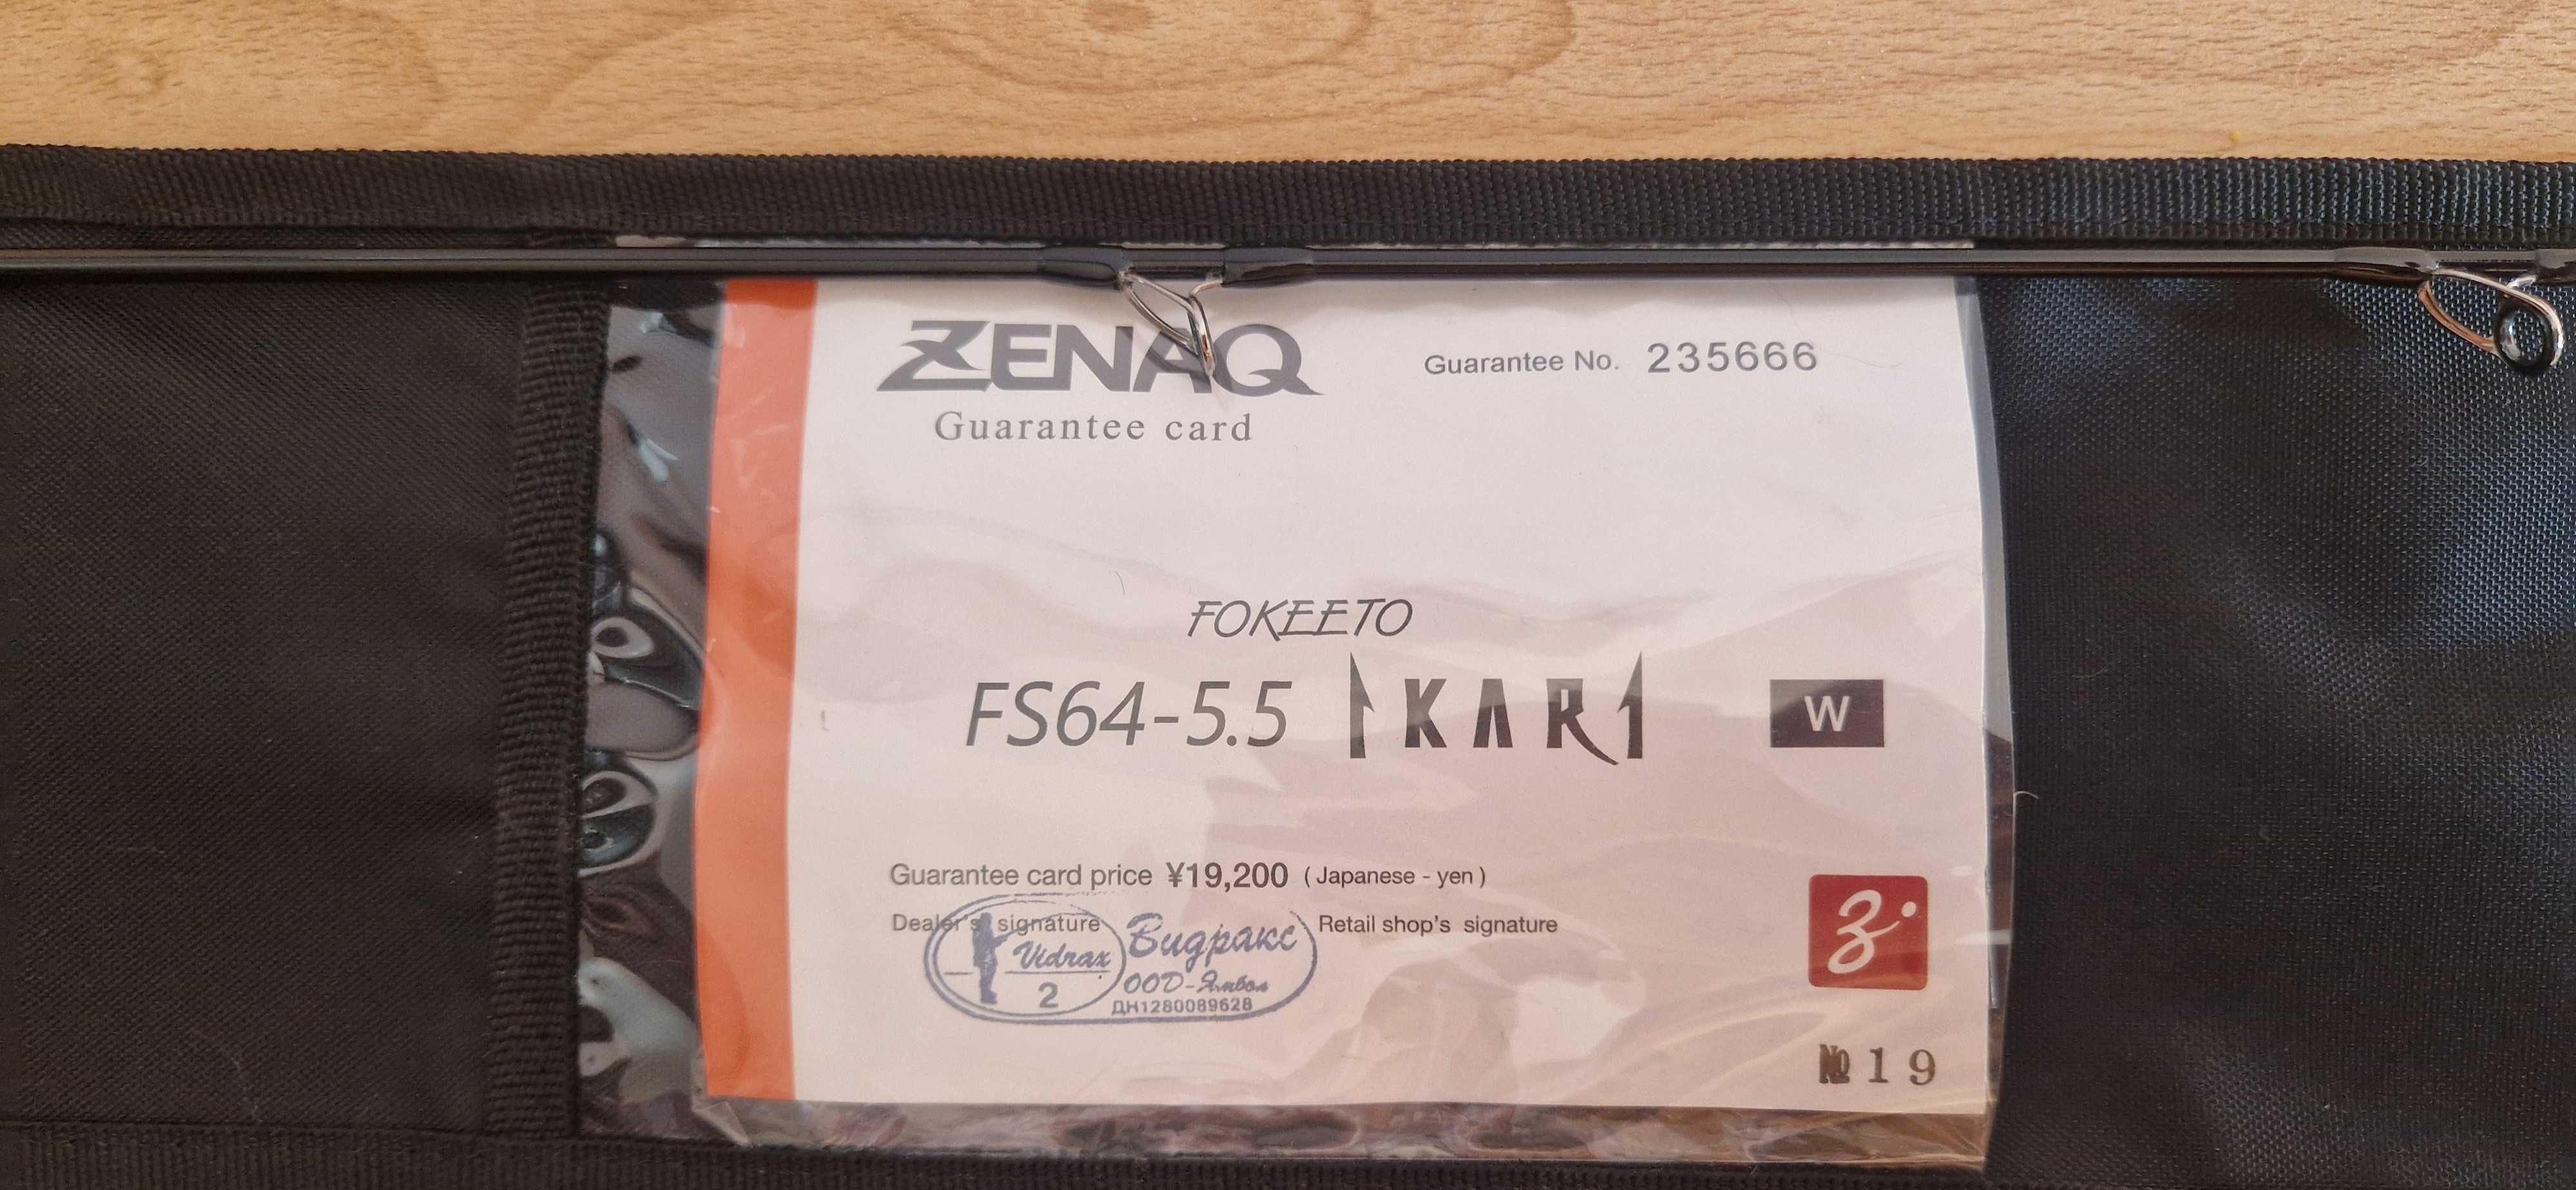 Zenaq Fokeeto Ikari FS64-5.5